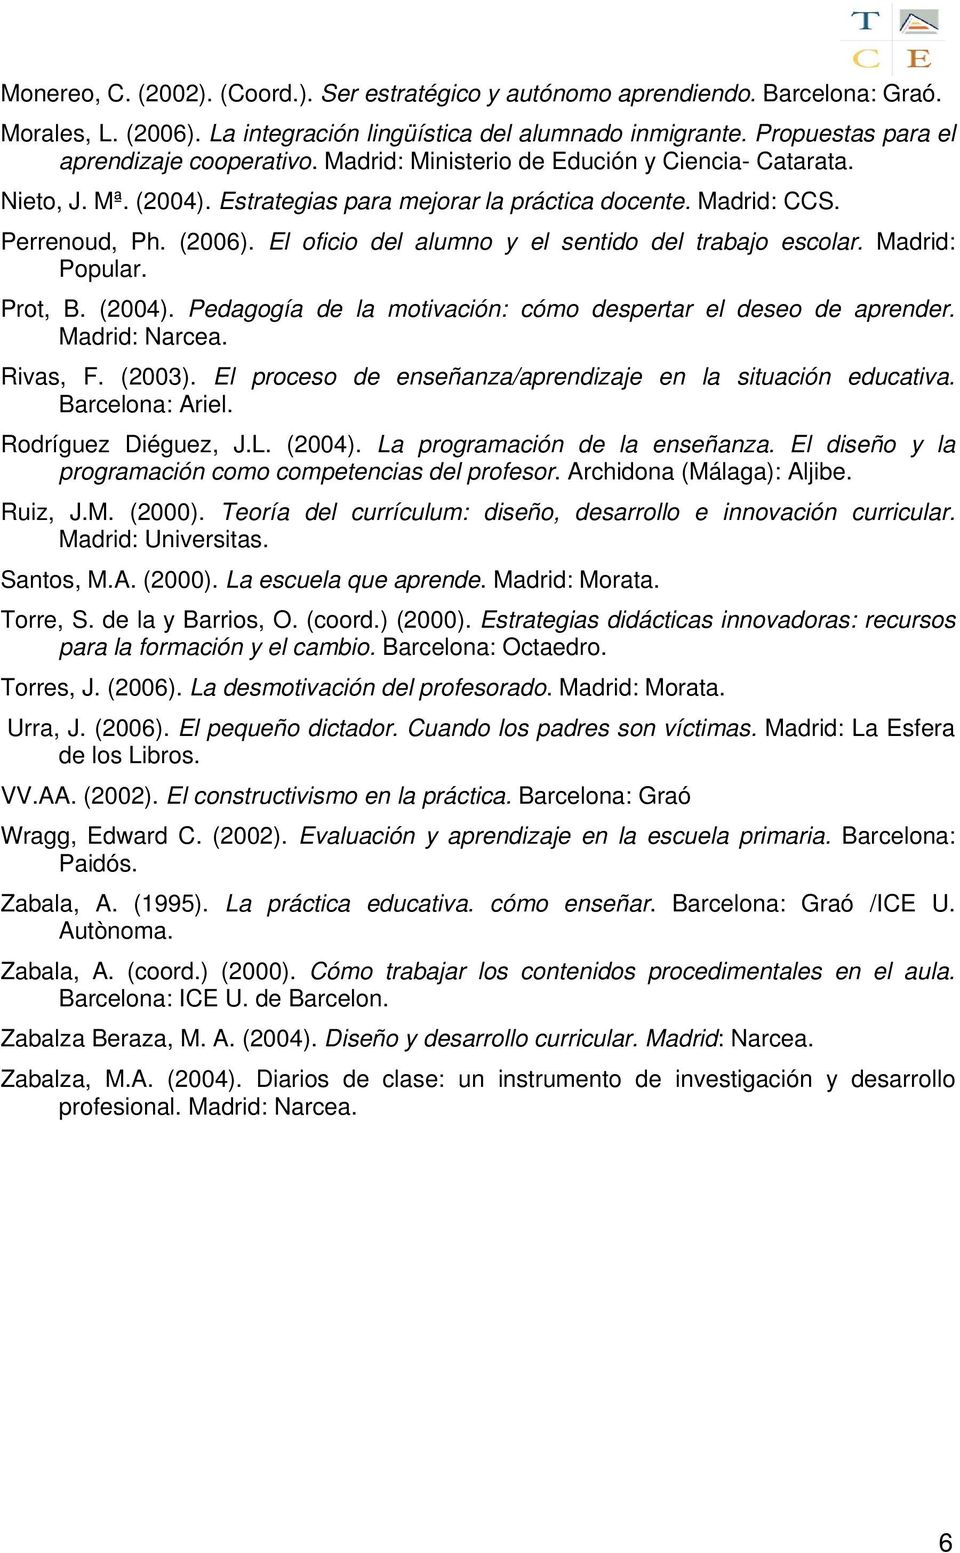 El oficio del alumno y el sentido del trabajo escolar. Madrid: Popular. Prot, B. (2004). Pedagogía de la motivación: cómo despertar el deseo de aprender. Madrid: Narcea. Rivas, F. (2003).